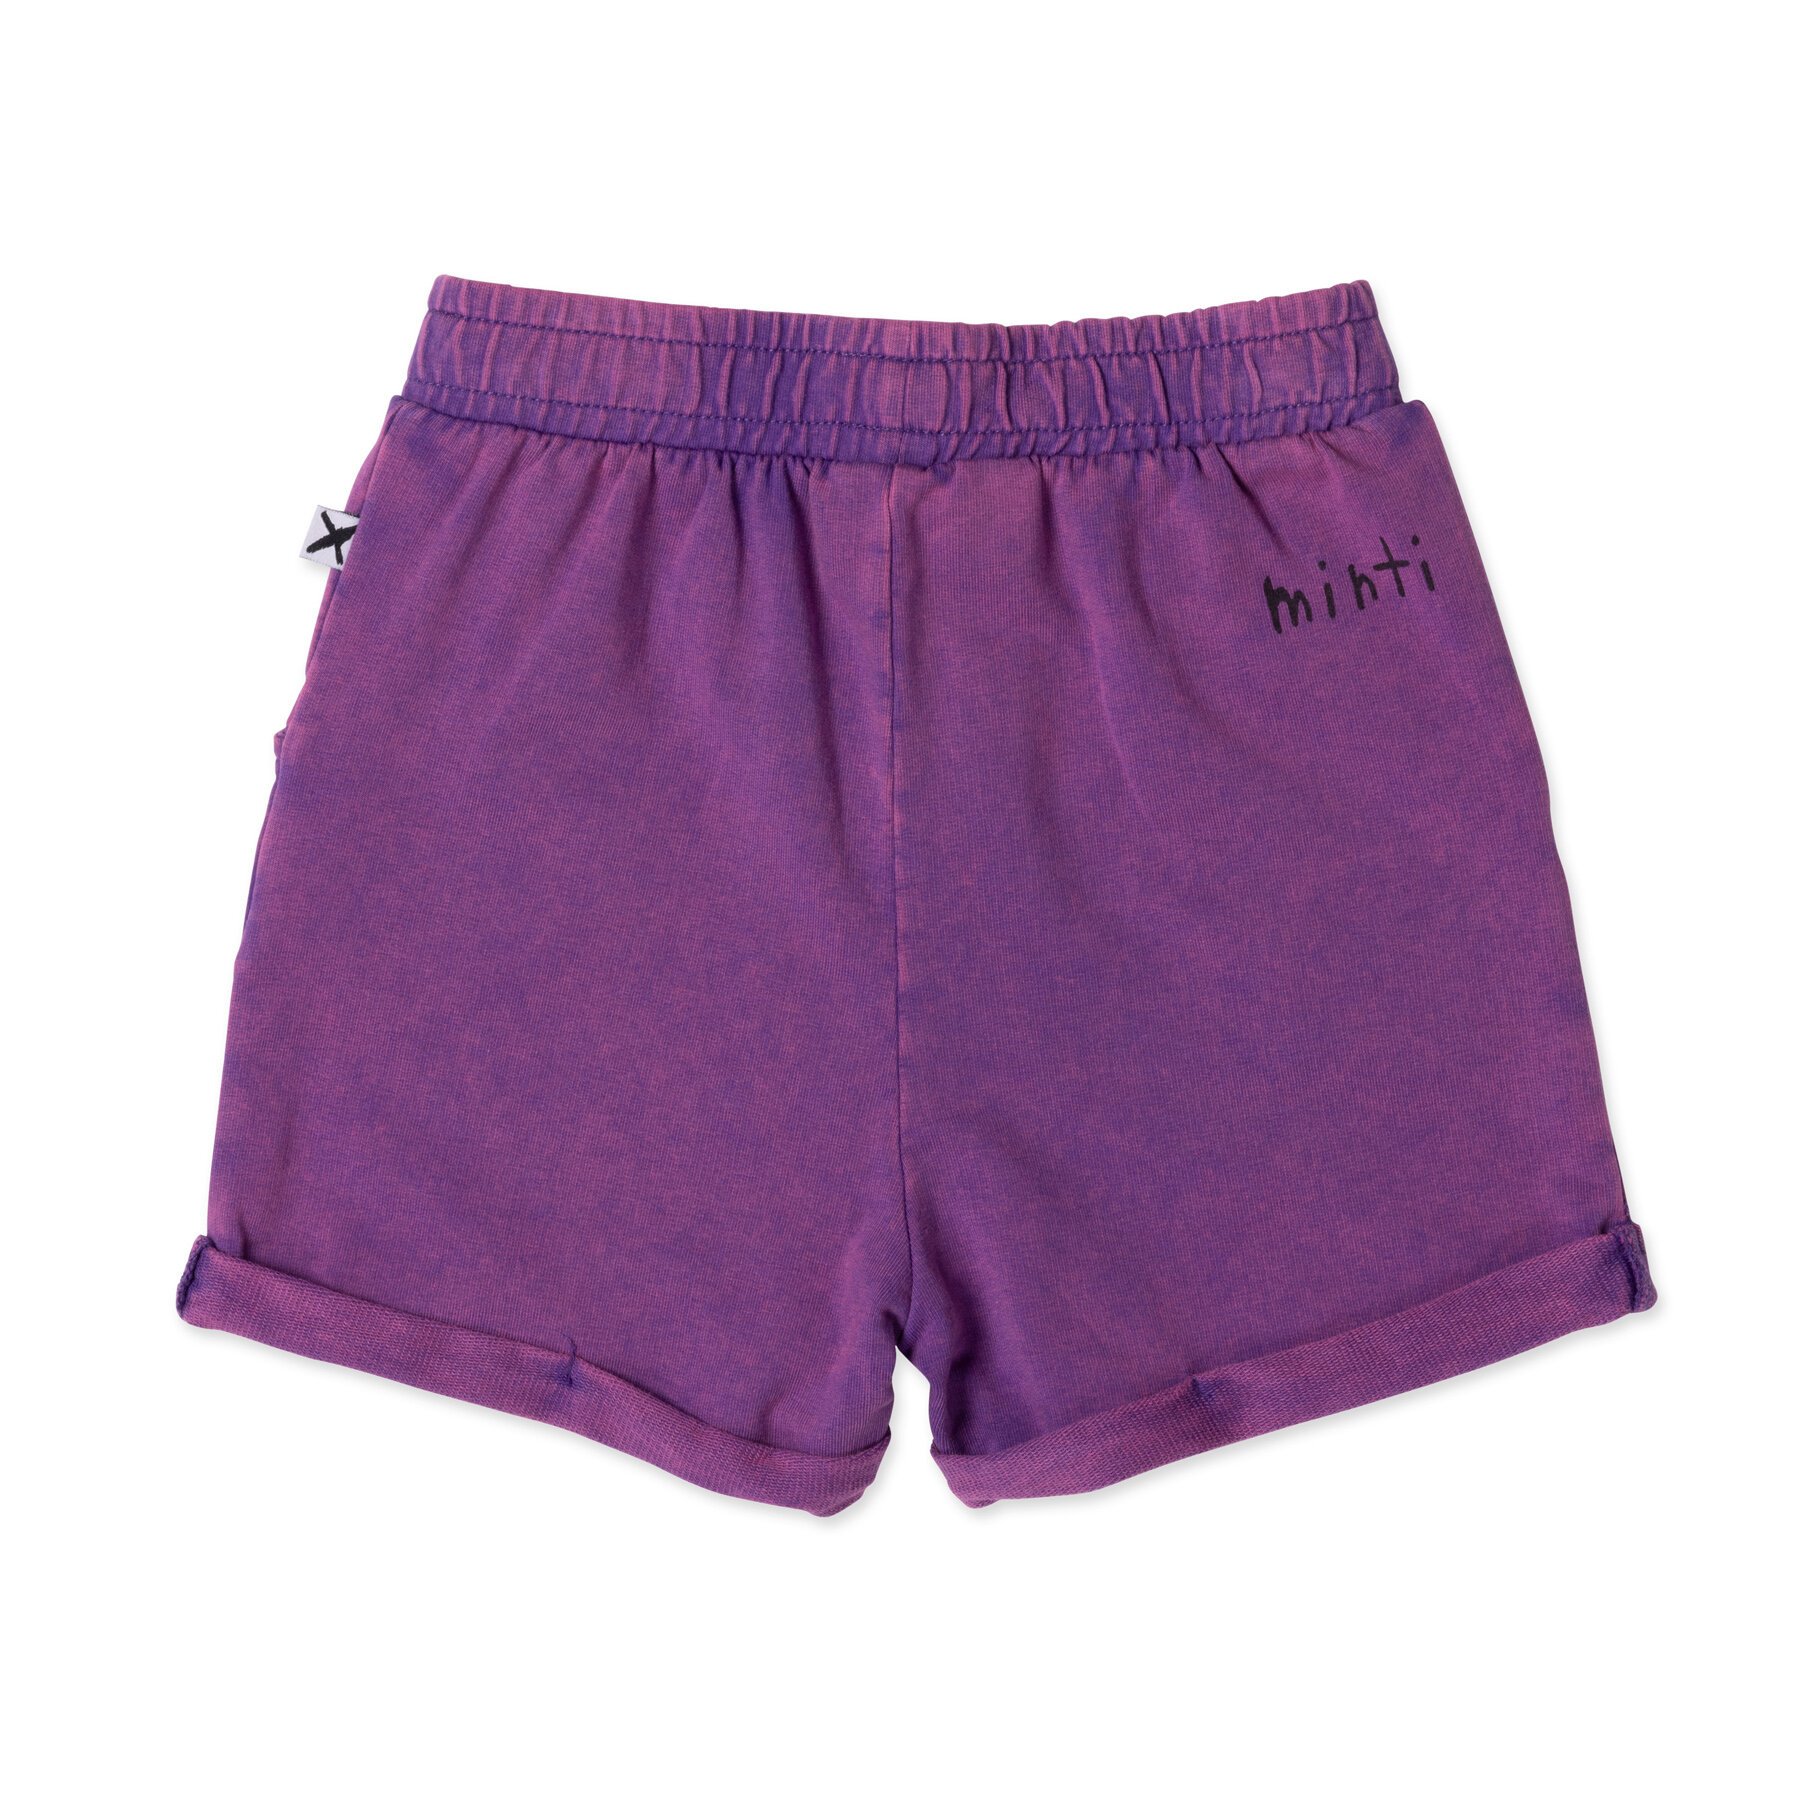 Purple Shorts  Purple shorts outfit, Short outfits, Fashion